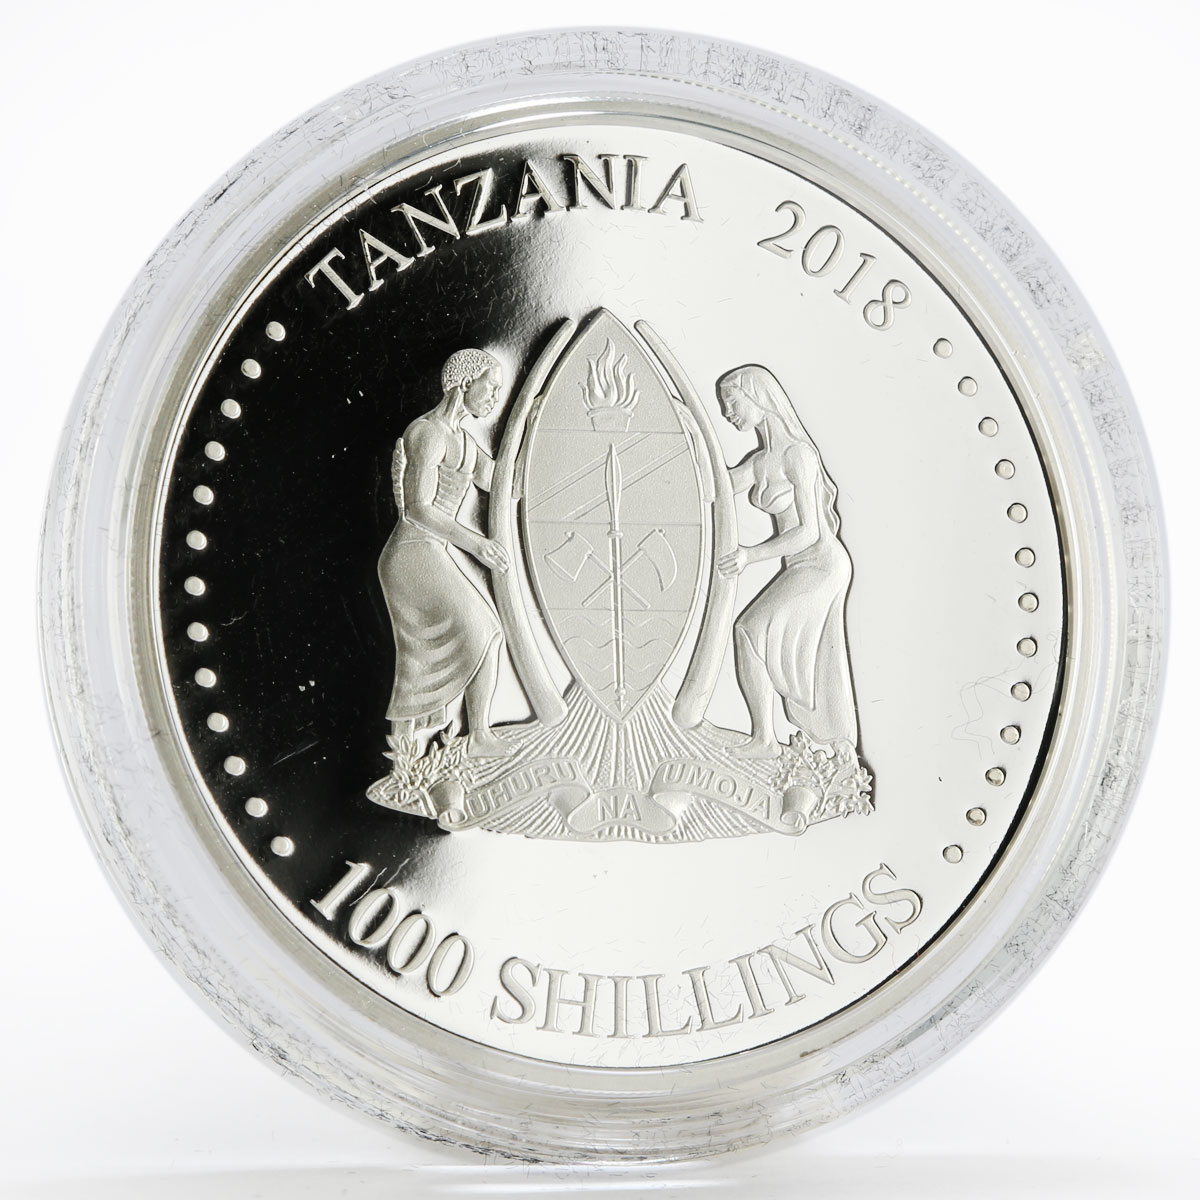 Tanzania 1000 shilings set of 2 coins Kalashnikov AK-47 colored silver coin 2018